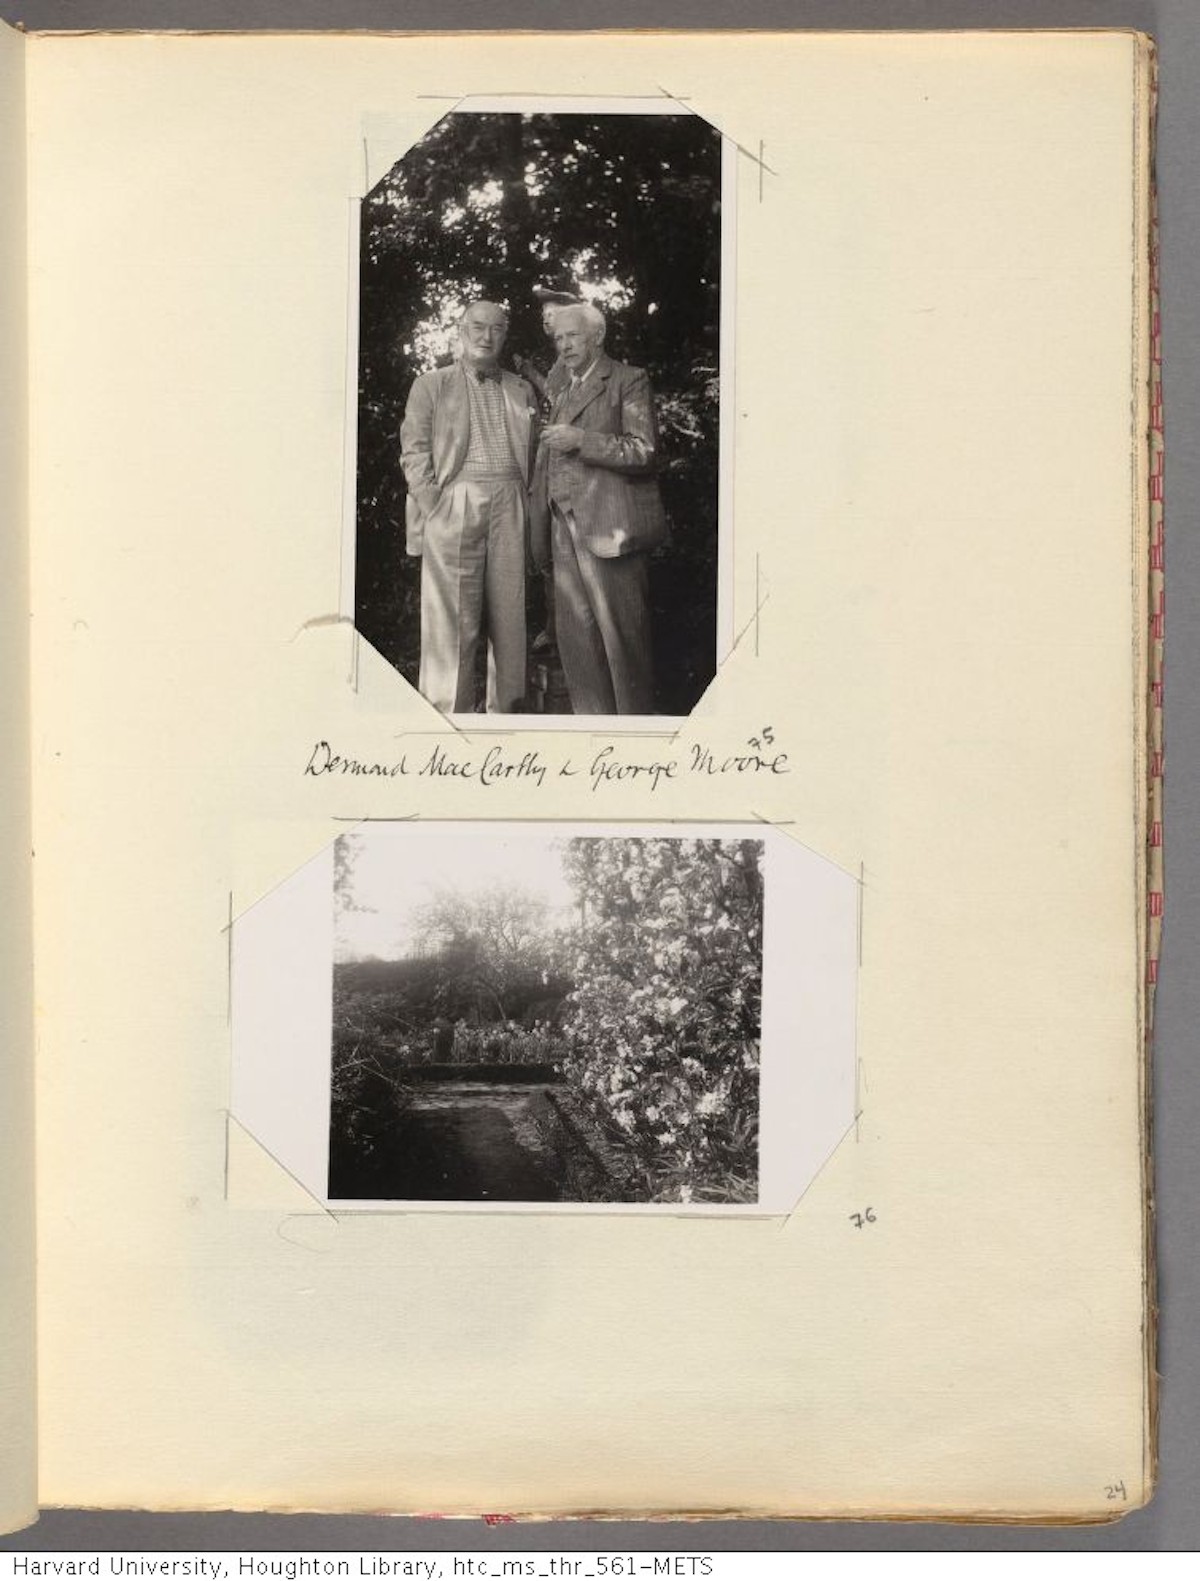 VirginiaWoolf, Leonard Woolf, Monk's house, photos